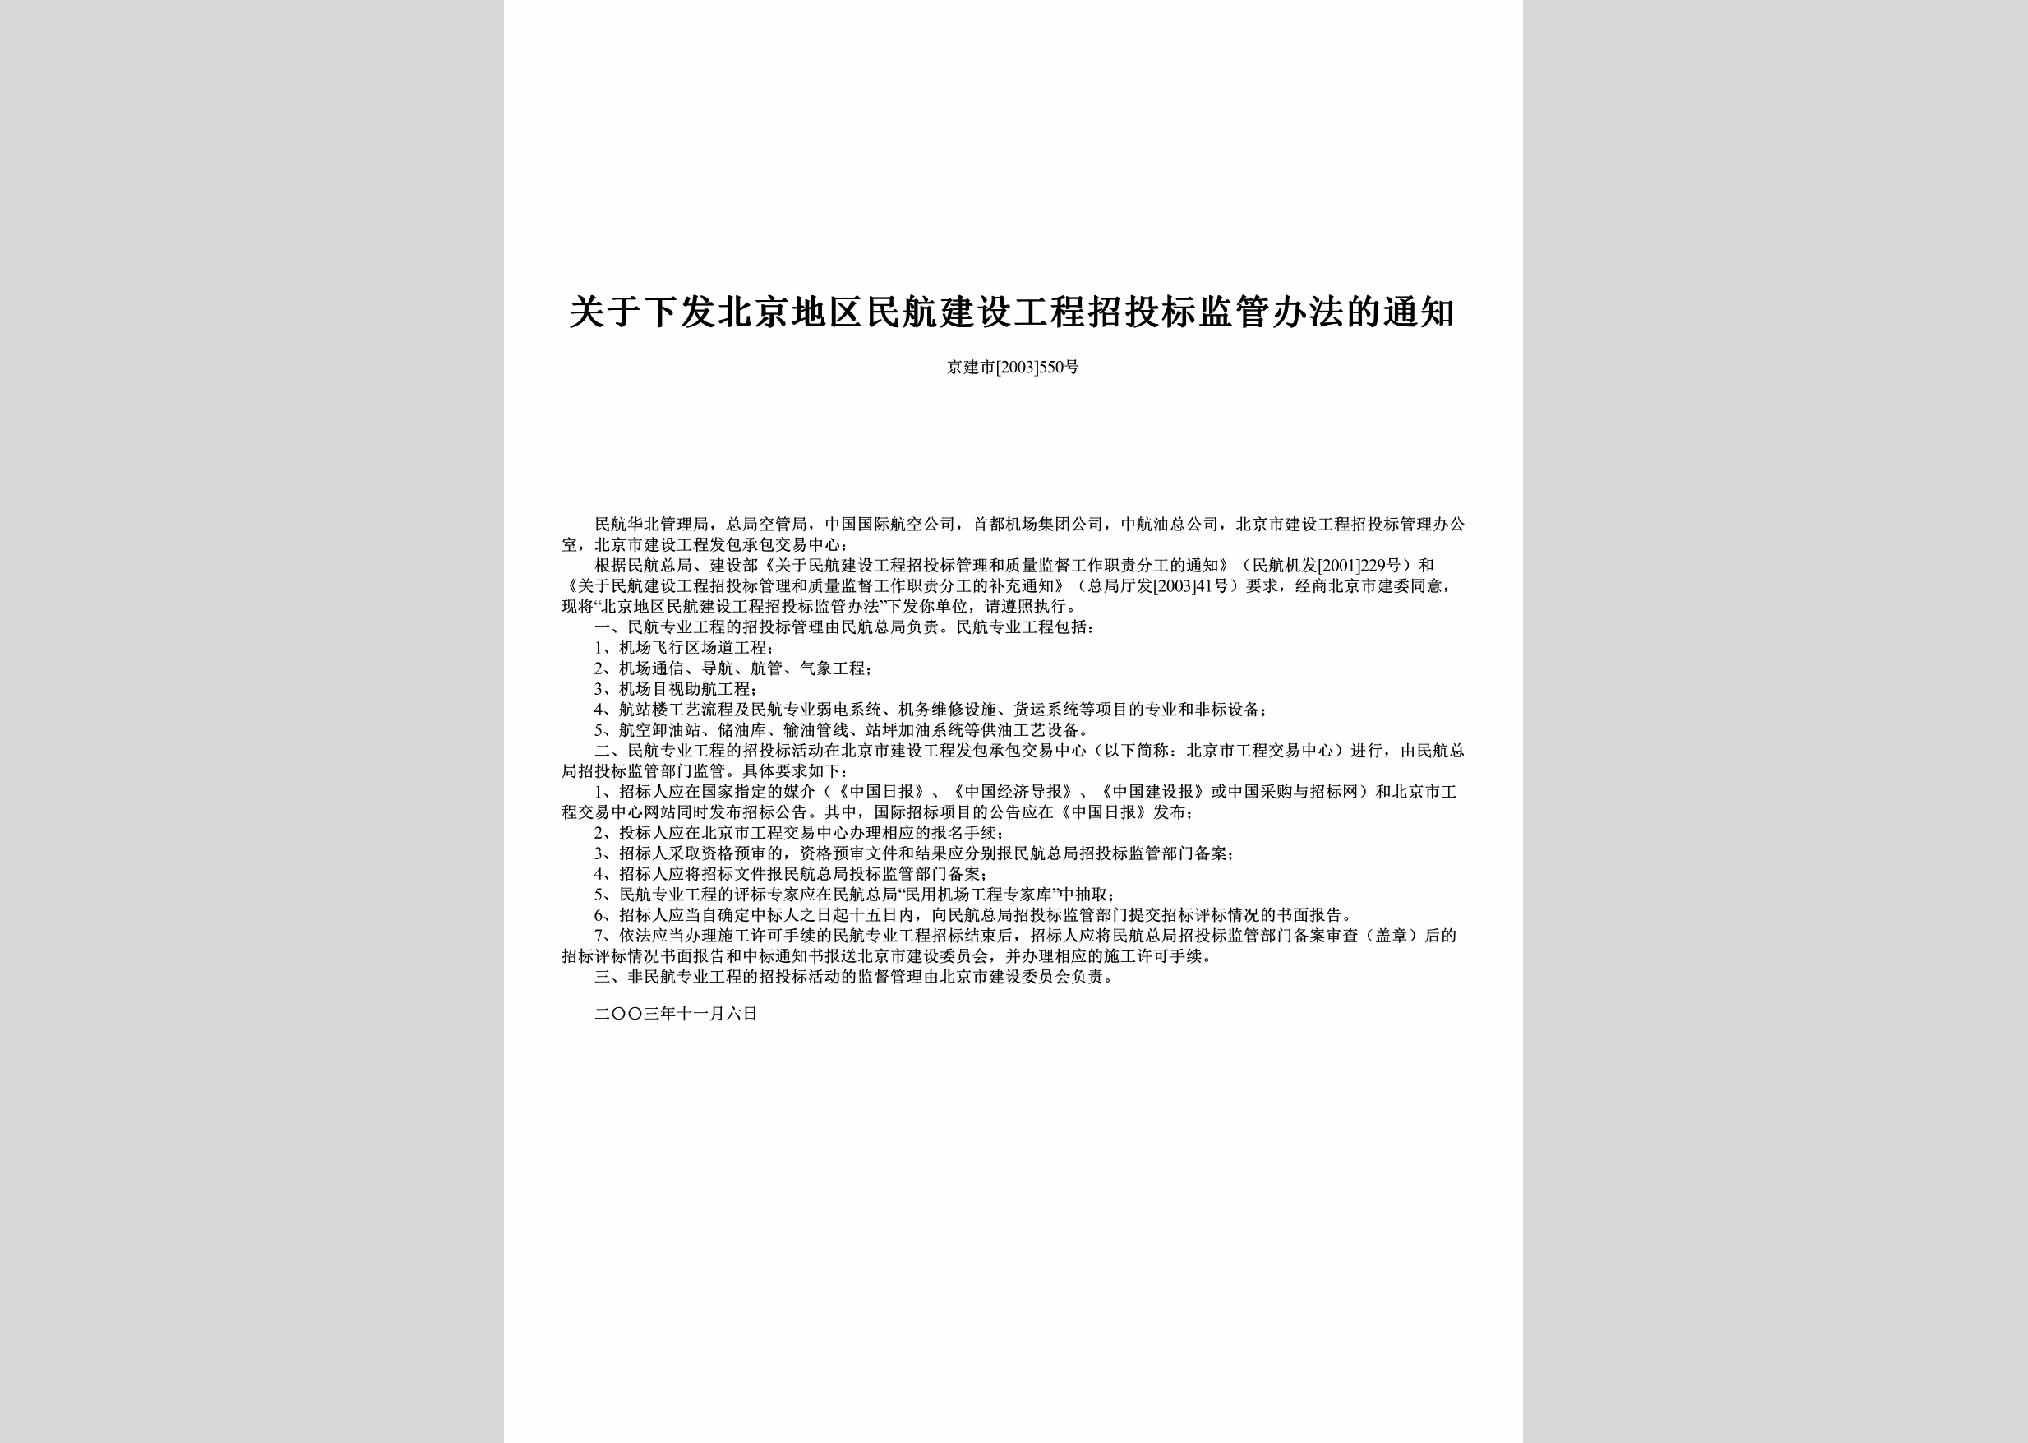 京建市[2003]550号：关于下发北京地区民航建设工程招投标监管办法的通知